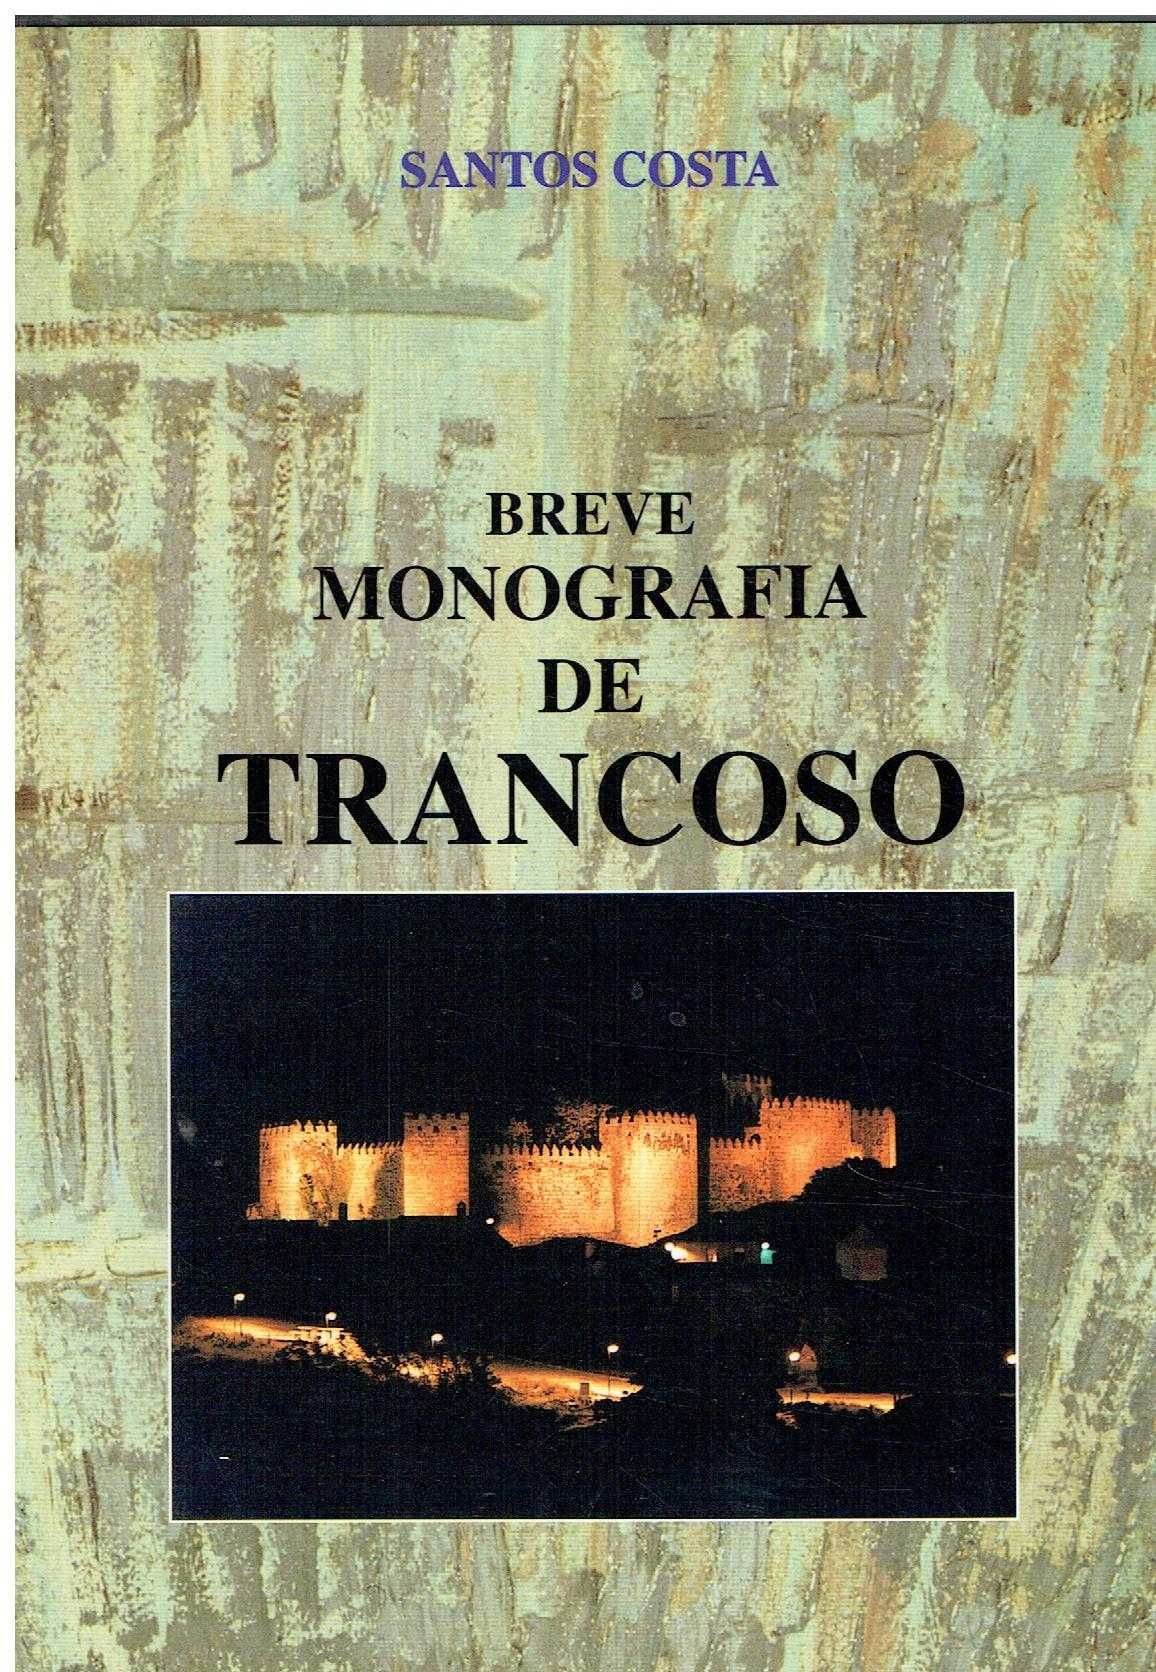 8068 - Livros sobre Pinhel / Trancoso / Sernancelhe